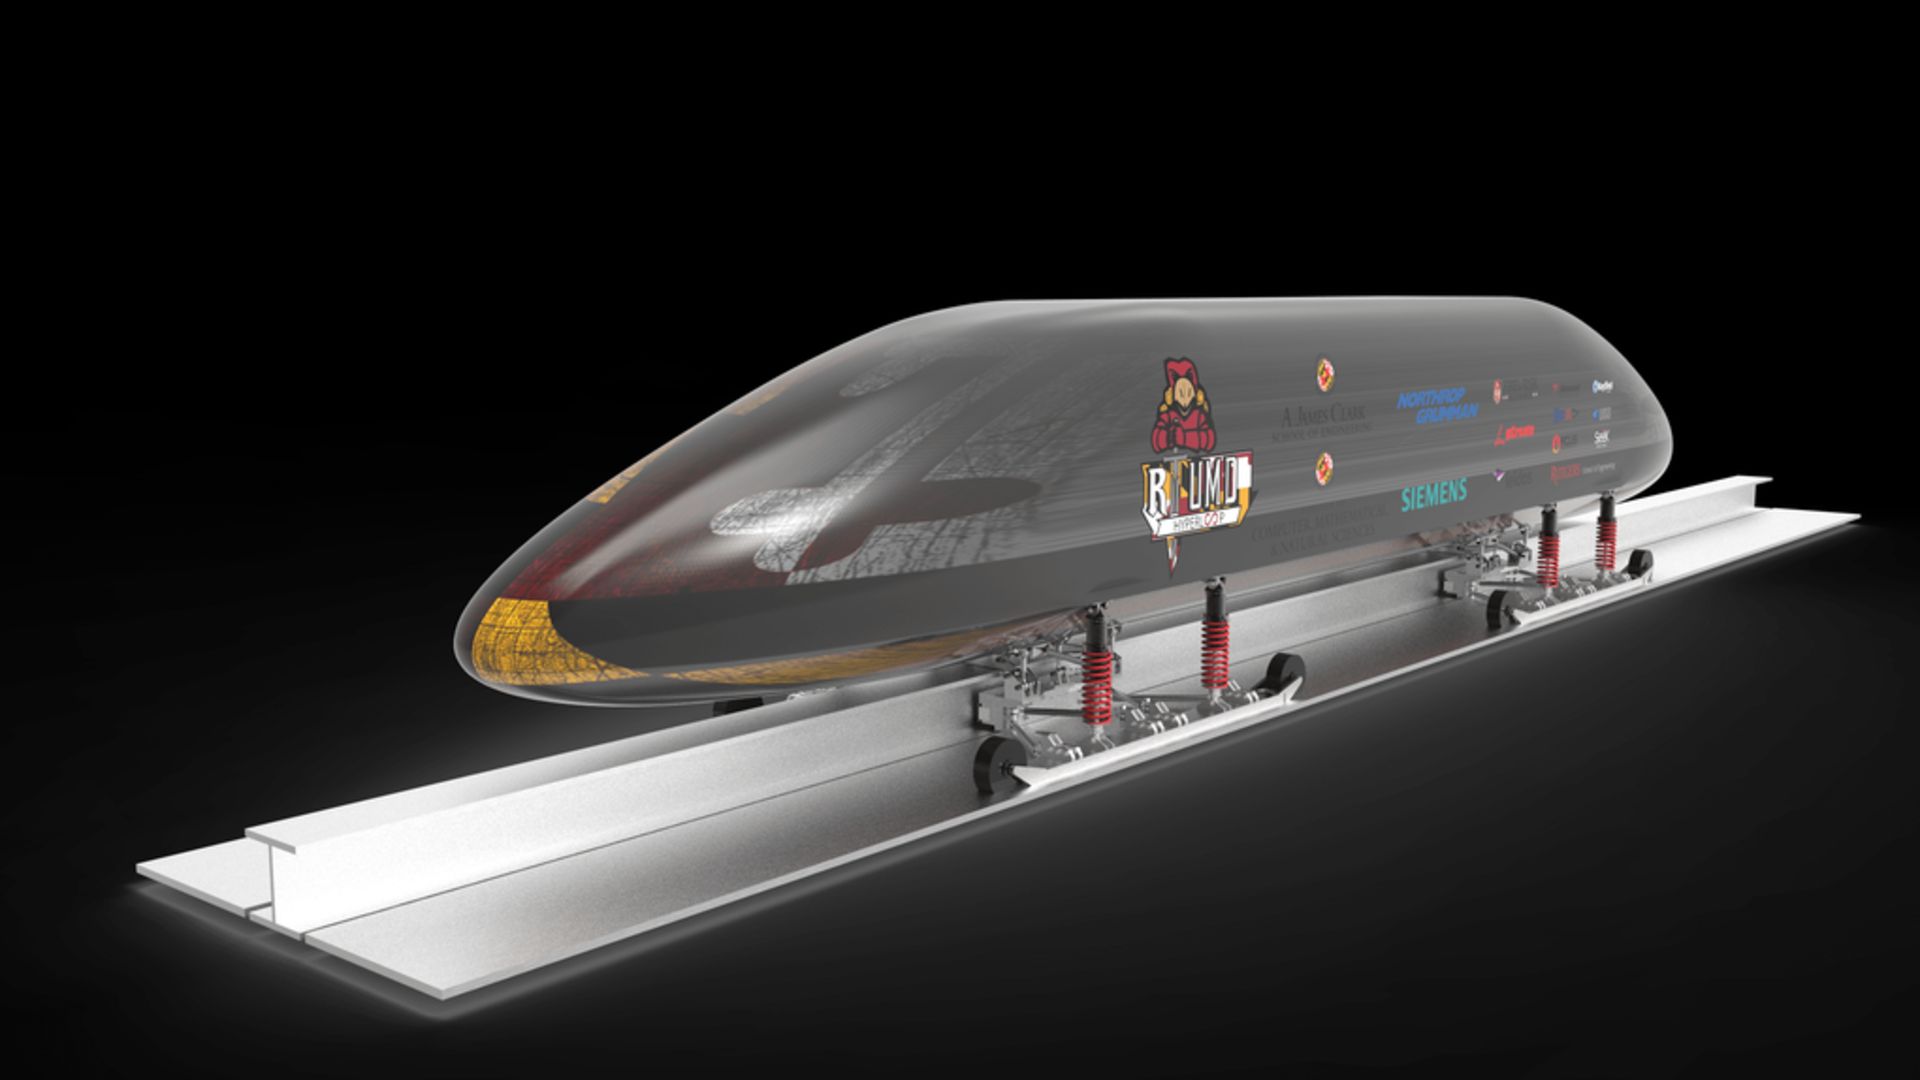 پروژه هایپرلوپ Hyperloop